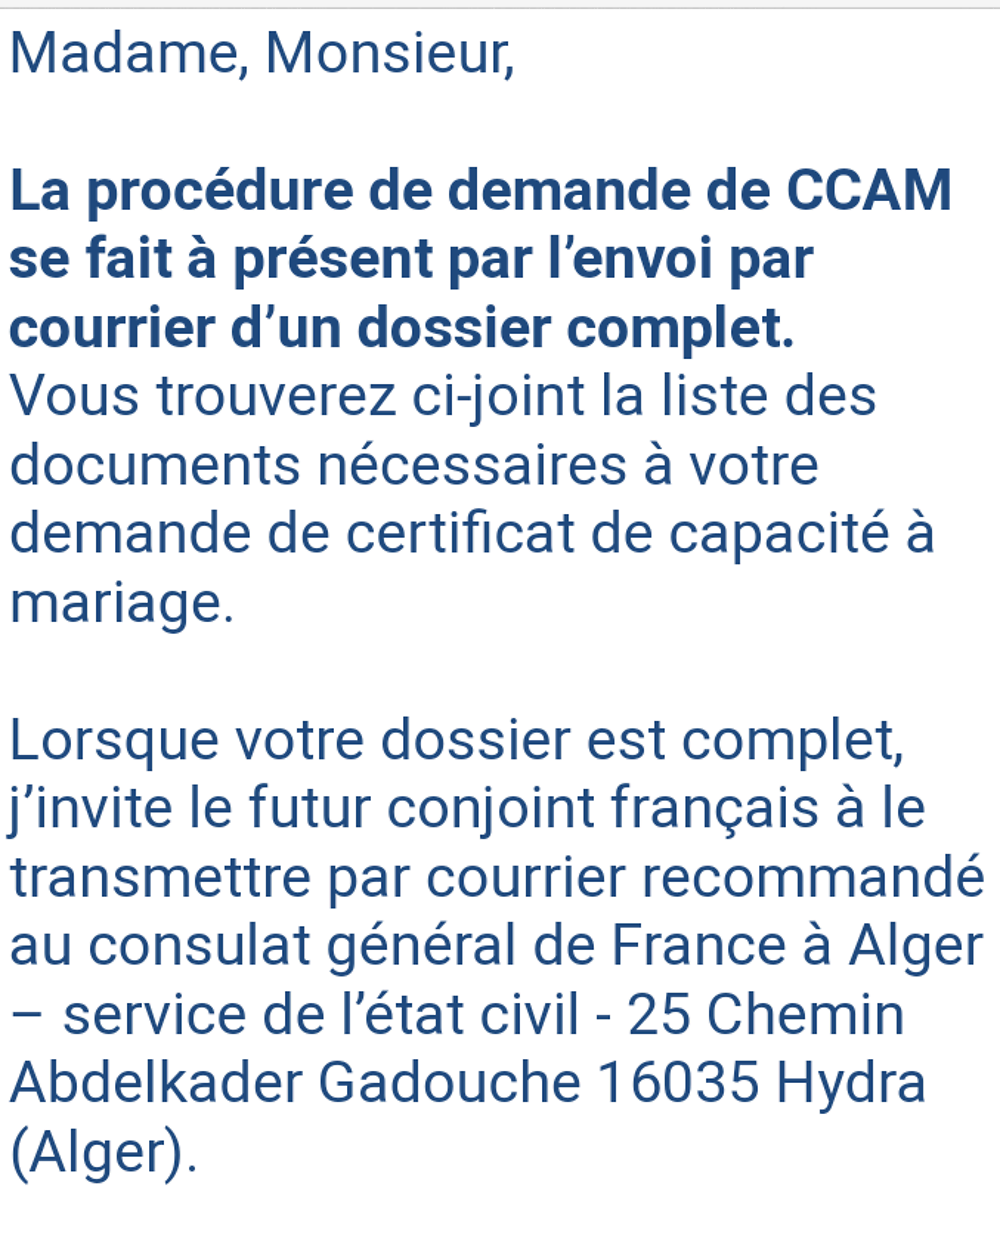 Re: Certificat de capacité à mariage (ccam) - formalités pour se marier en Algerie - NABILA-NABILA